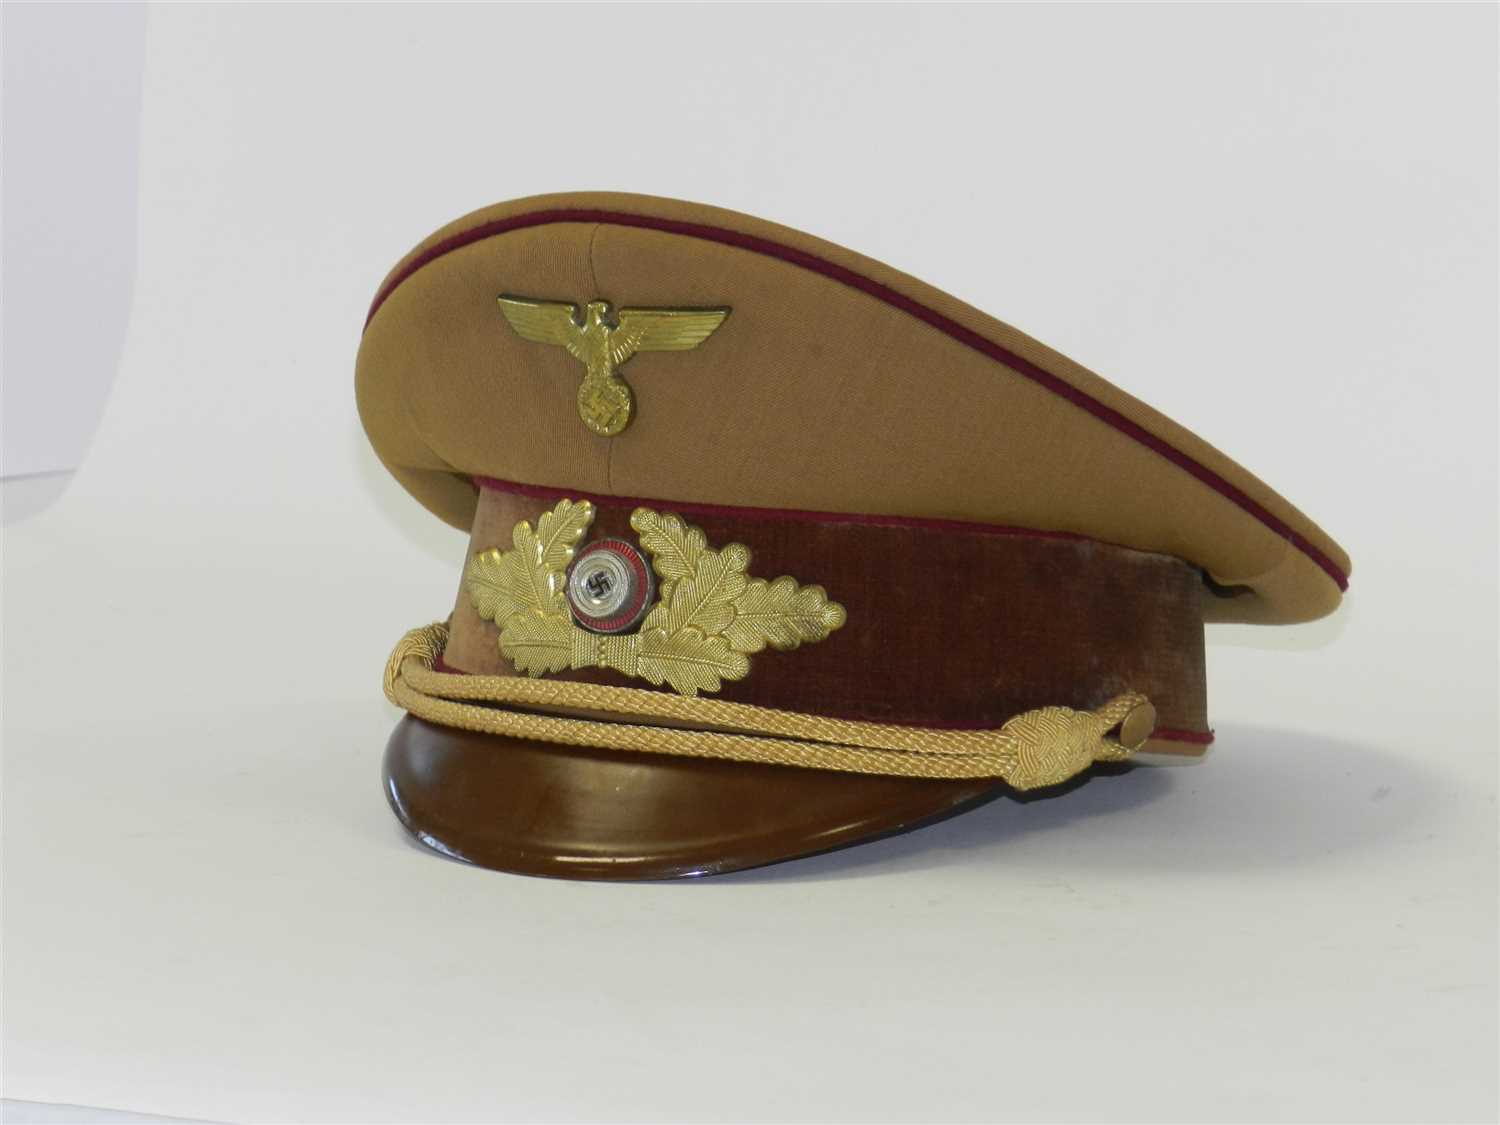 Lot 457 - German Third Reich NSDAP Political Leader's Gauleitung level visor cap